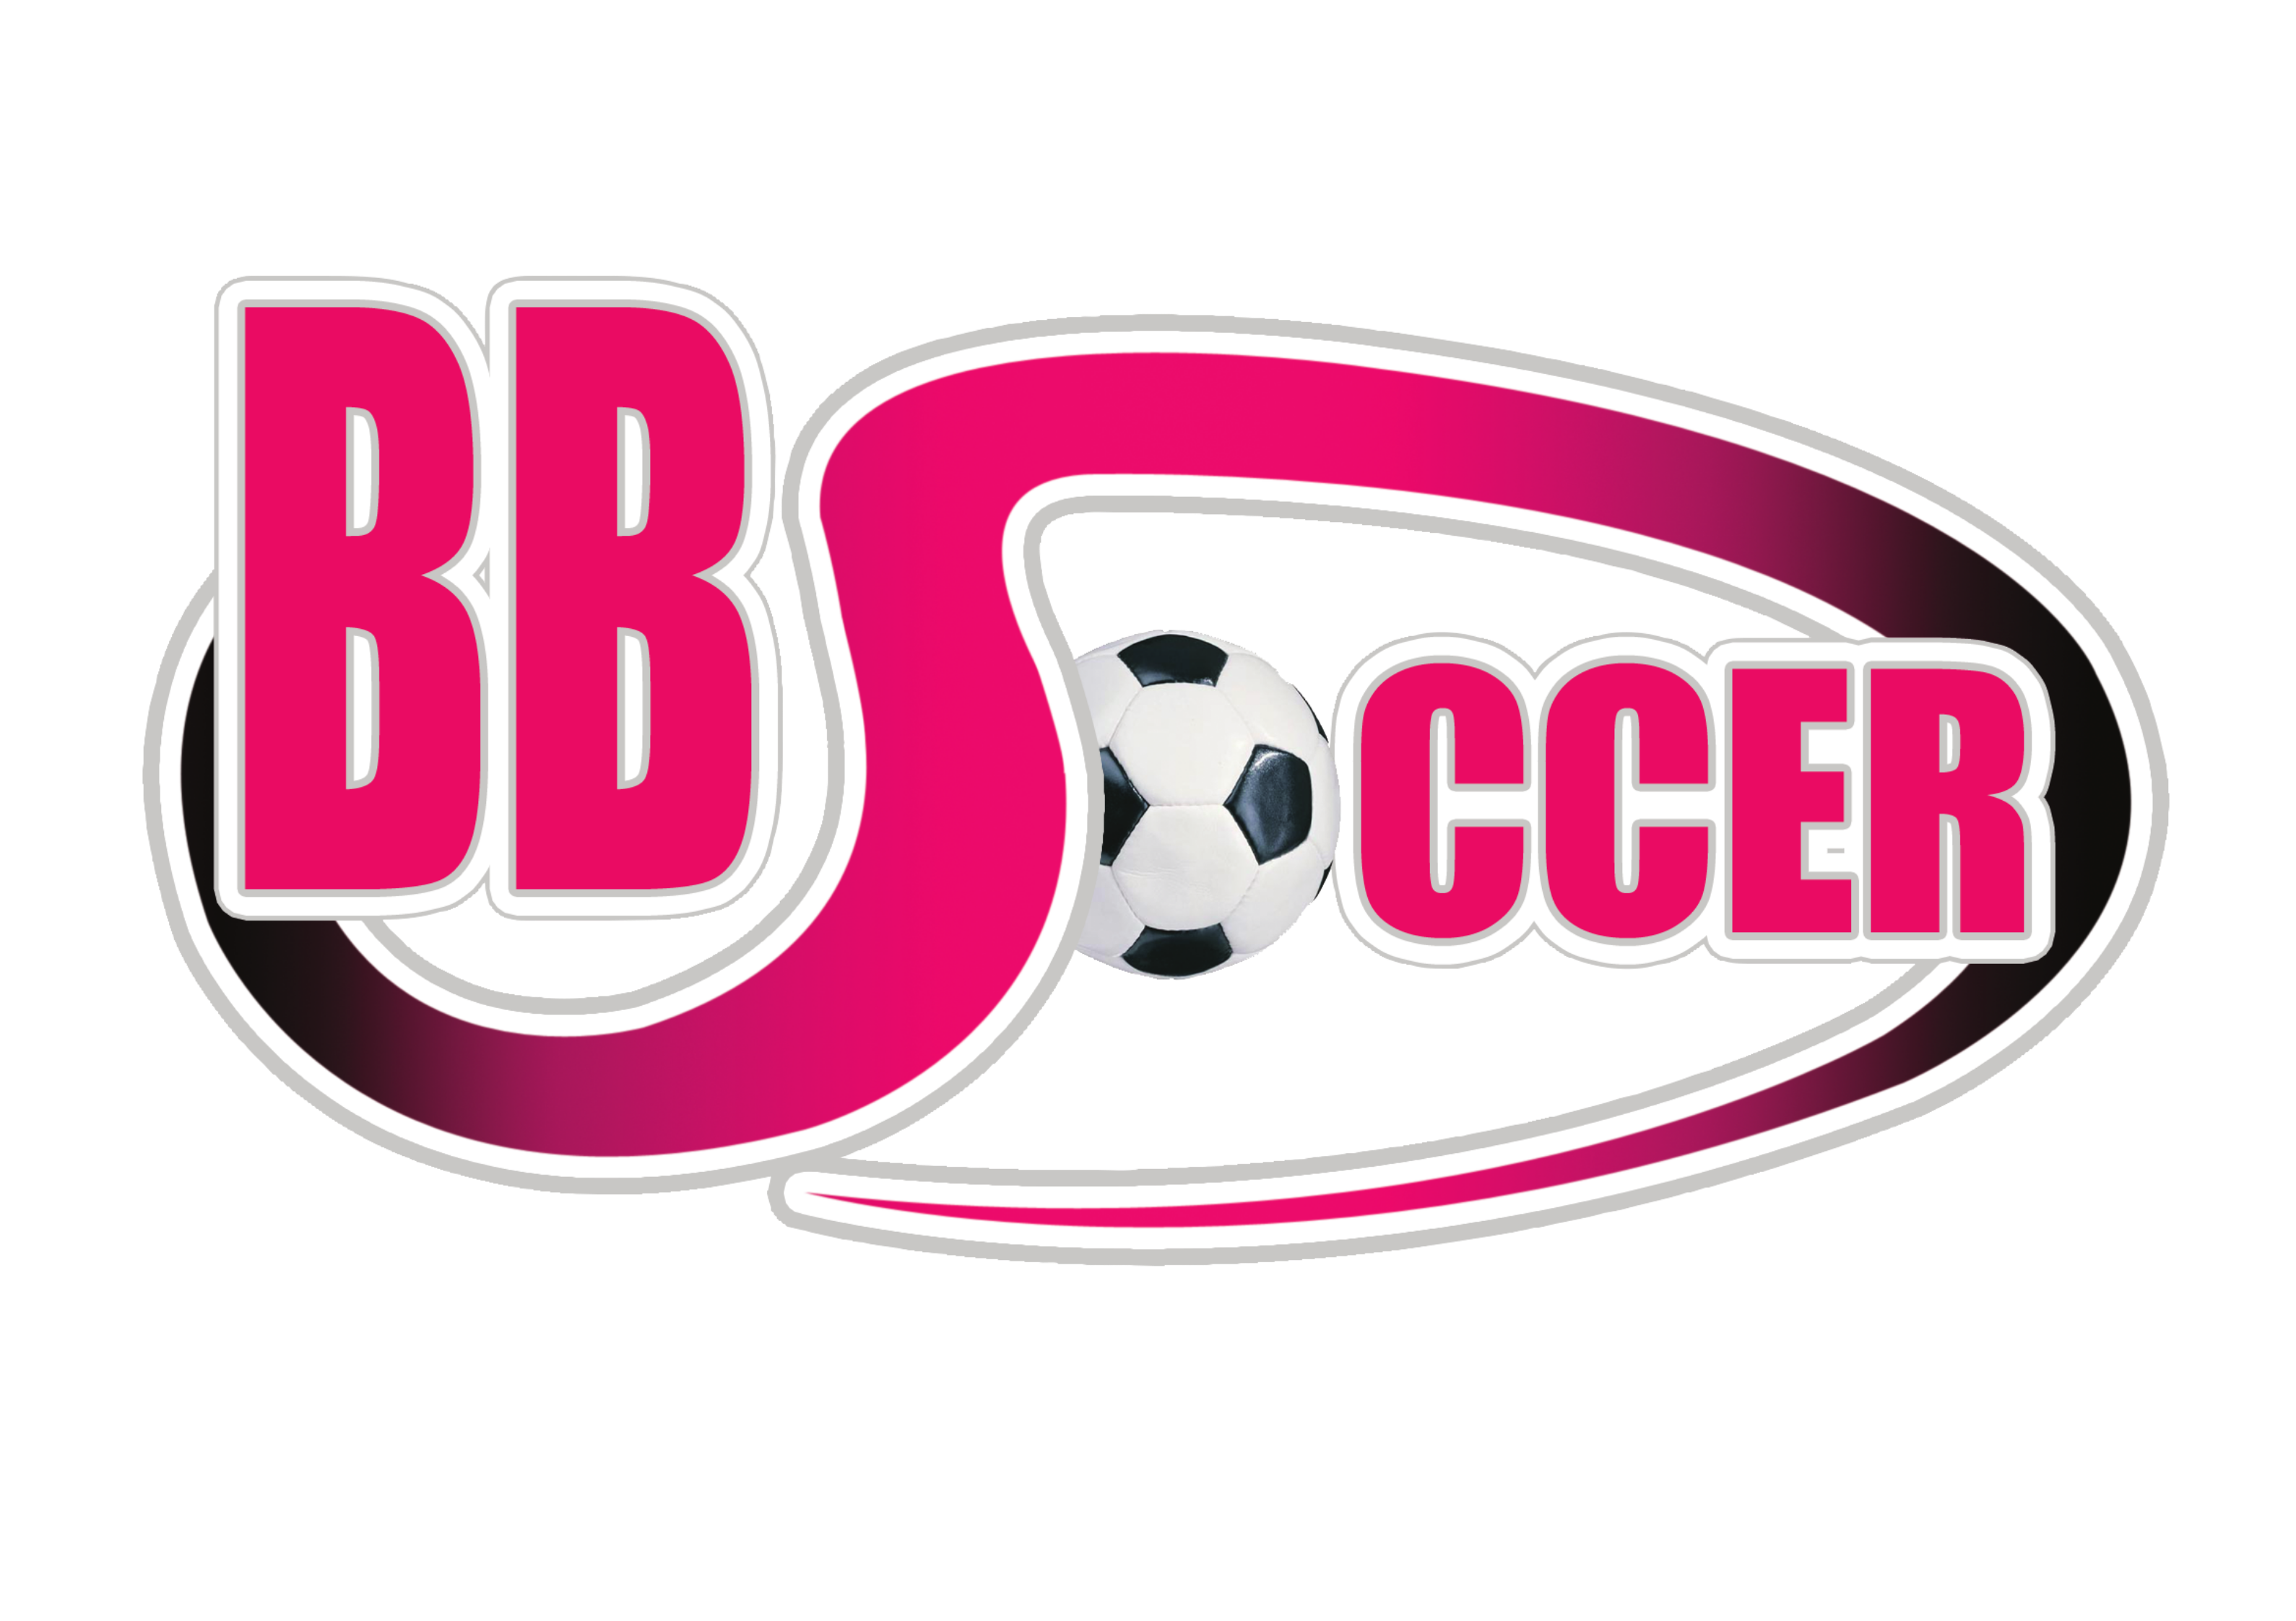 BB Soccer